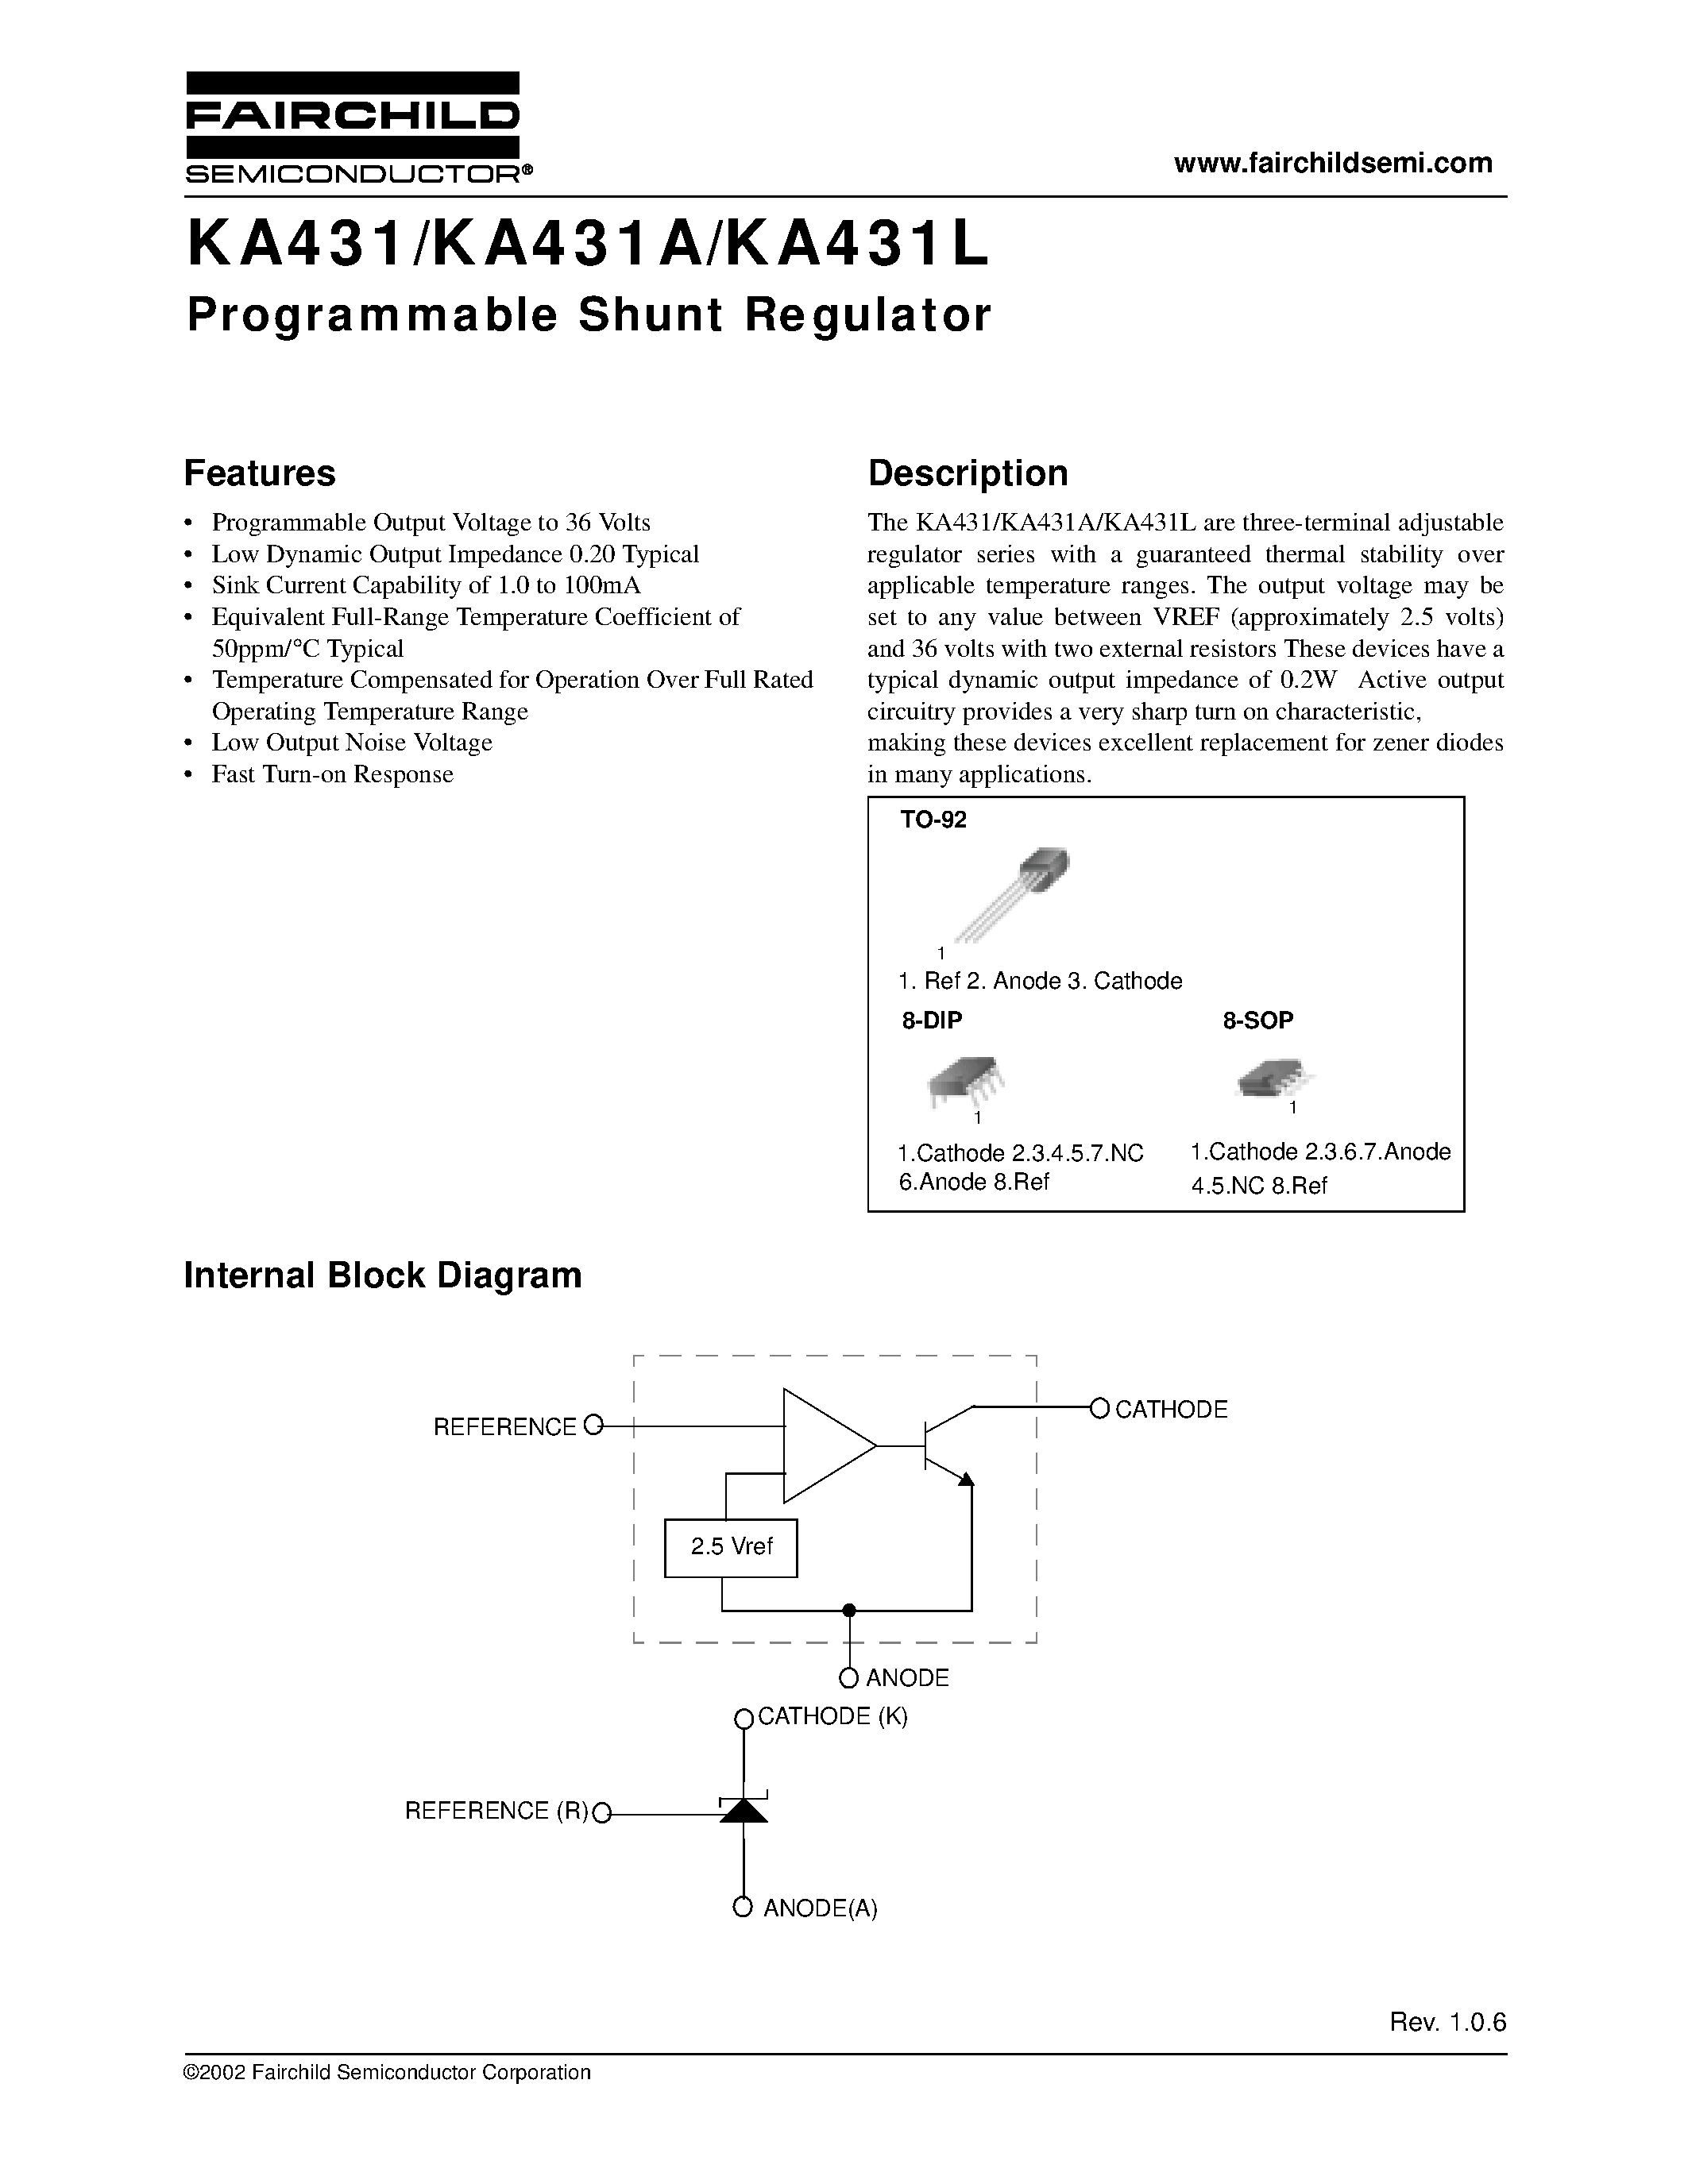 Даташит KA431L - Programmable Shunt Regulator страница 1